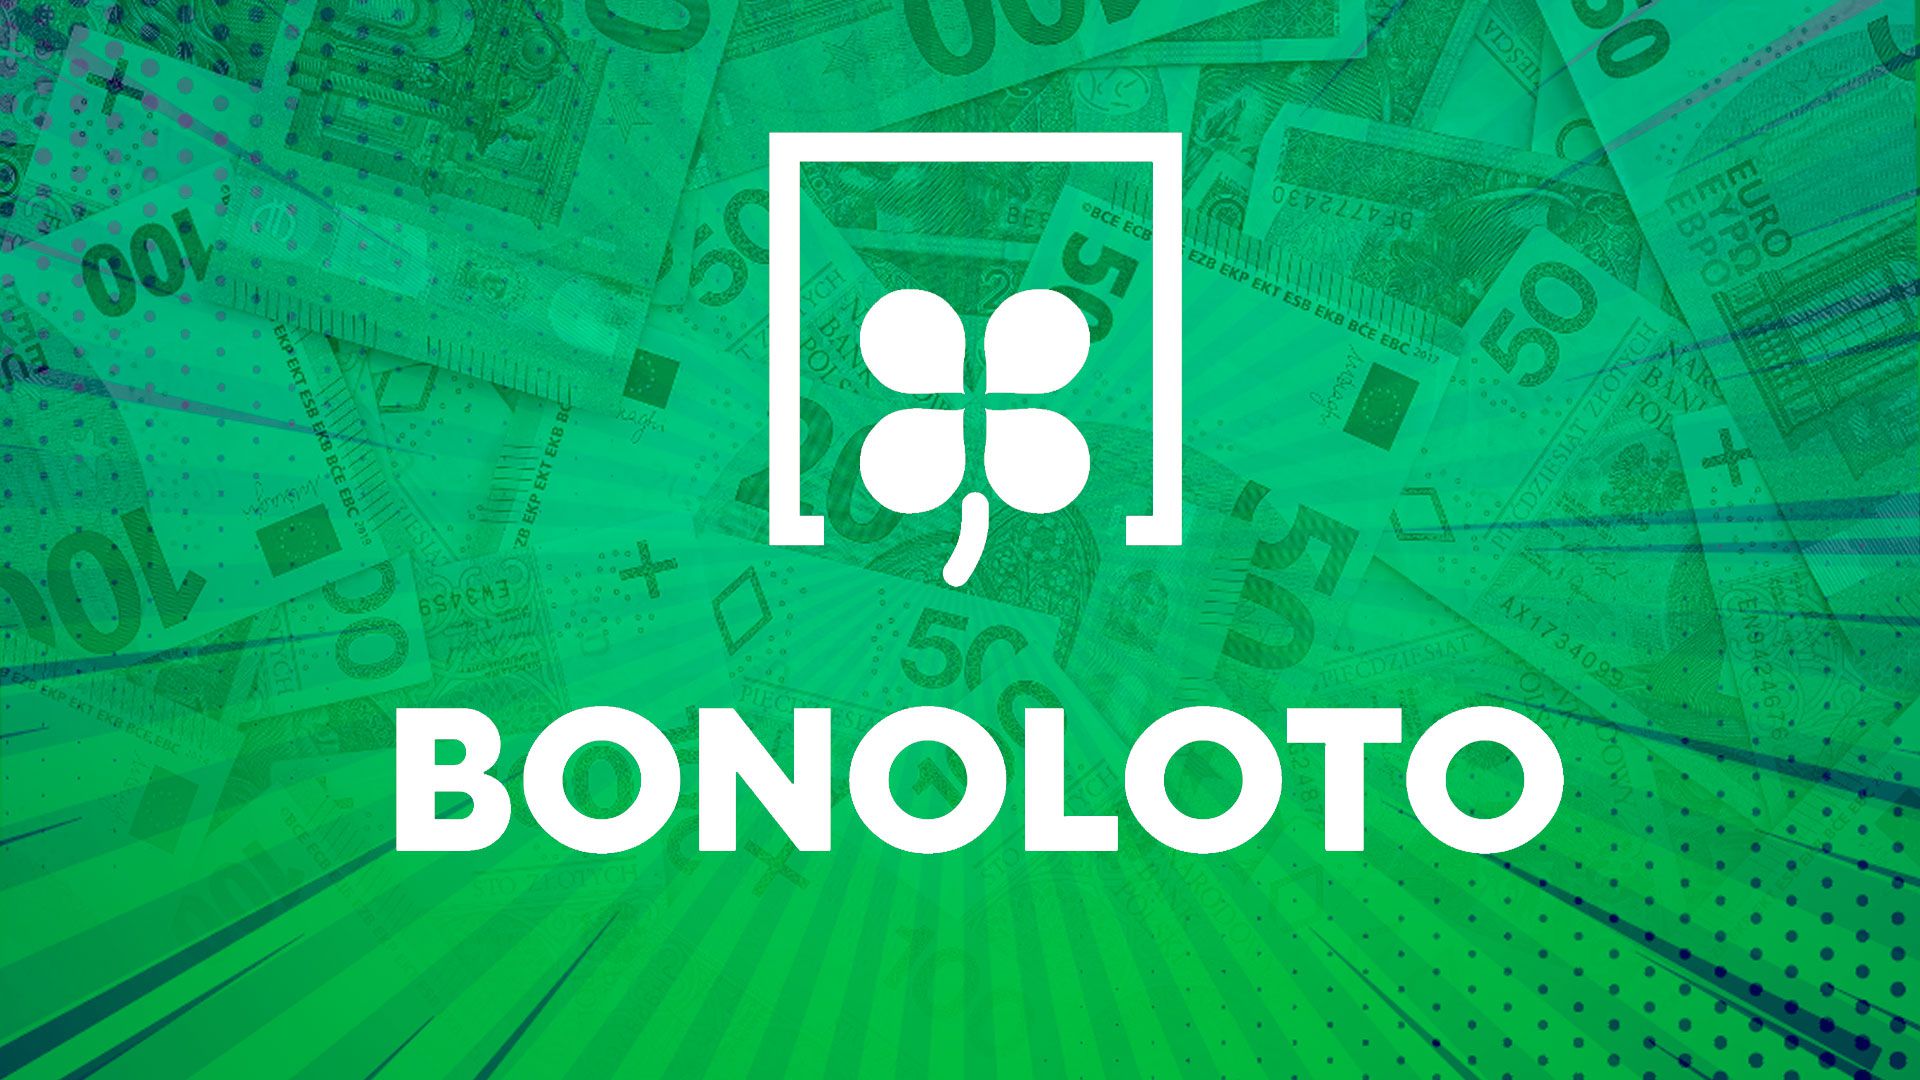 Bonoloto realiza tres sorteos a la semana, todos los lunes, jueves y sábados. (Infobae/Jovani Pérez)